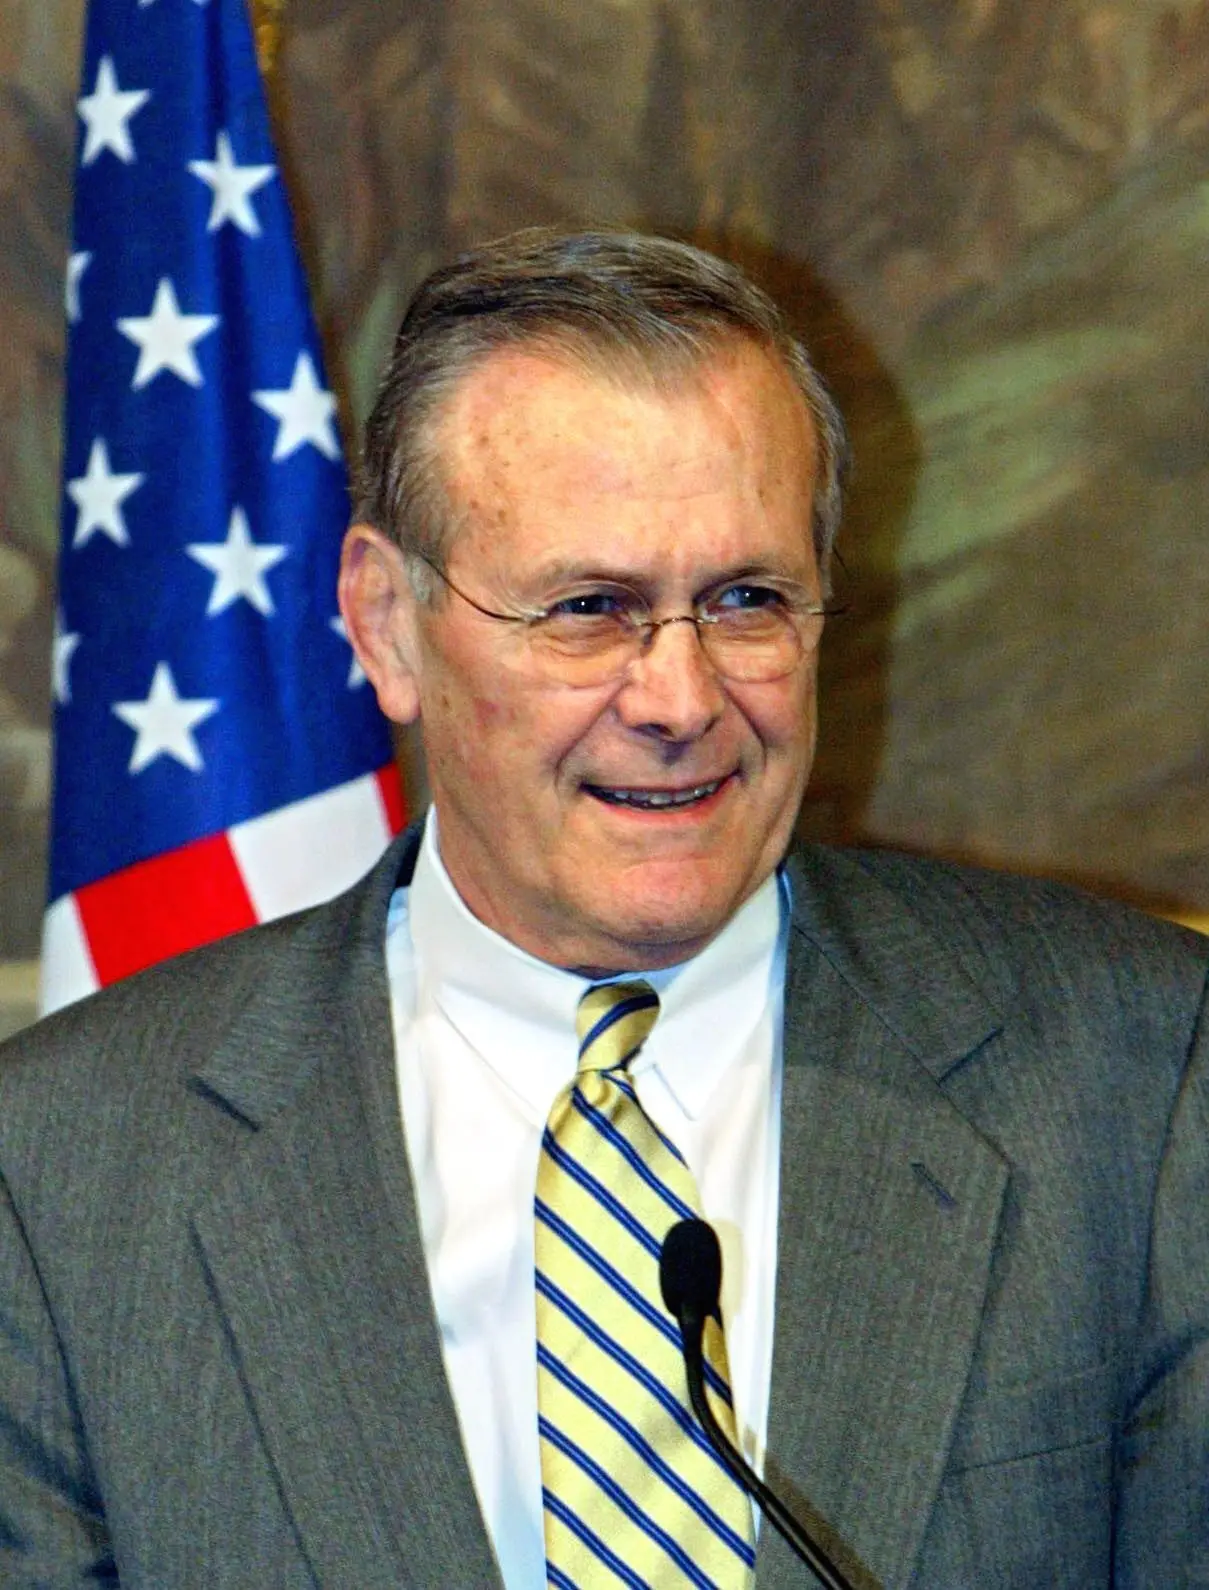 Portätfoto von Donald Rumsfeld vor der Amerikanischen-Flagge